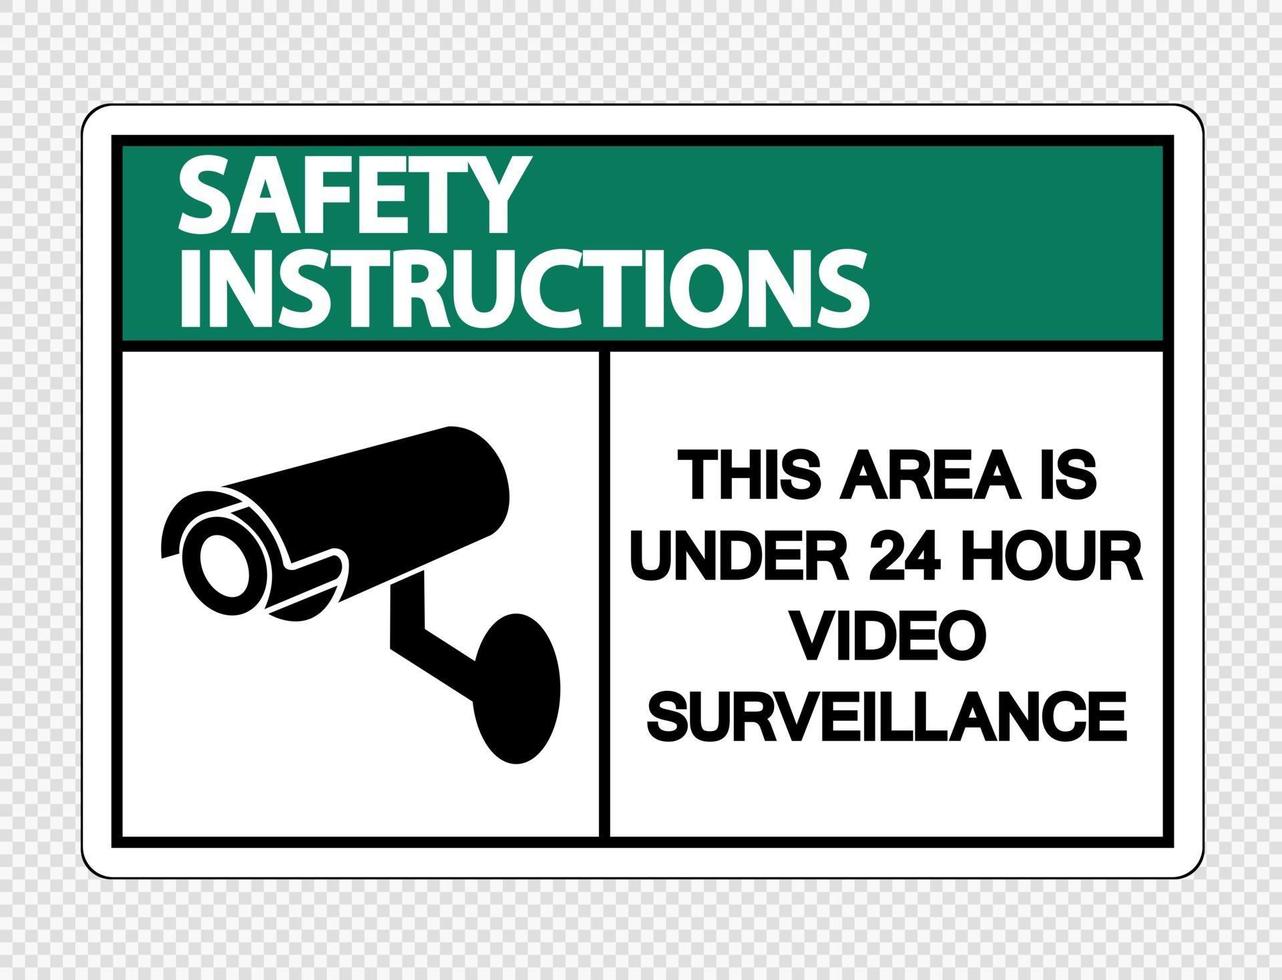 istruzioni di sicurezza questa zona è sotto il segno di videosorveglianza 24 ore su 24 su sfondo trasparente vettore